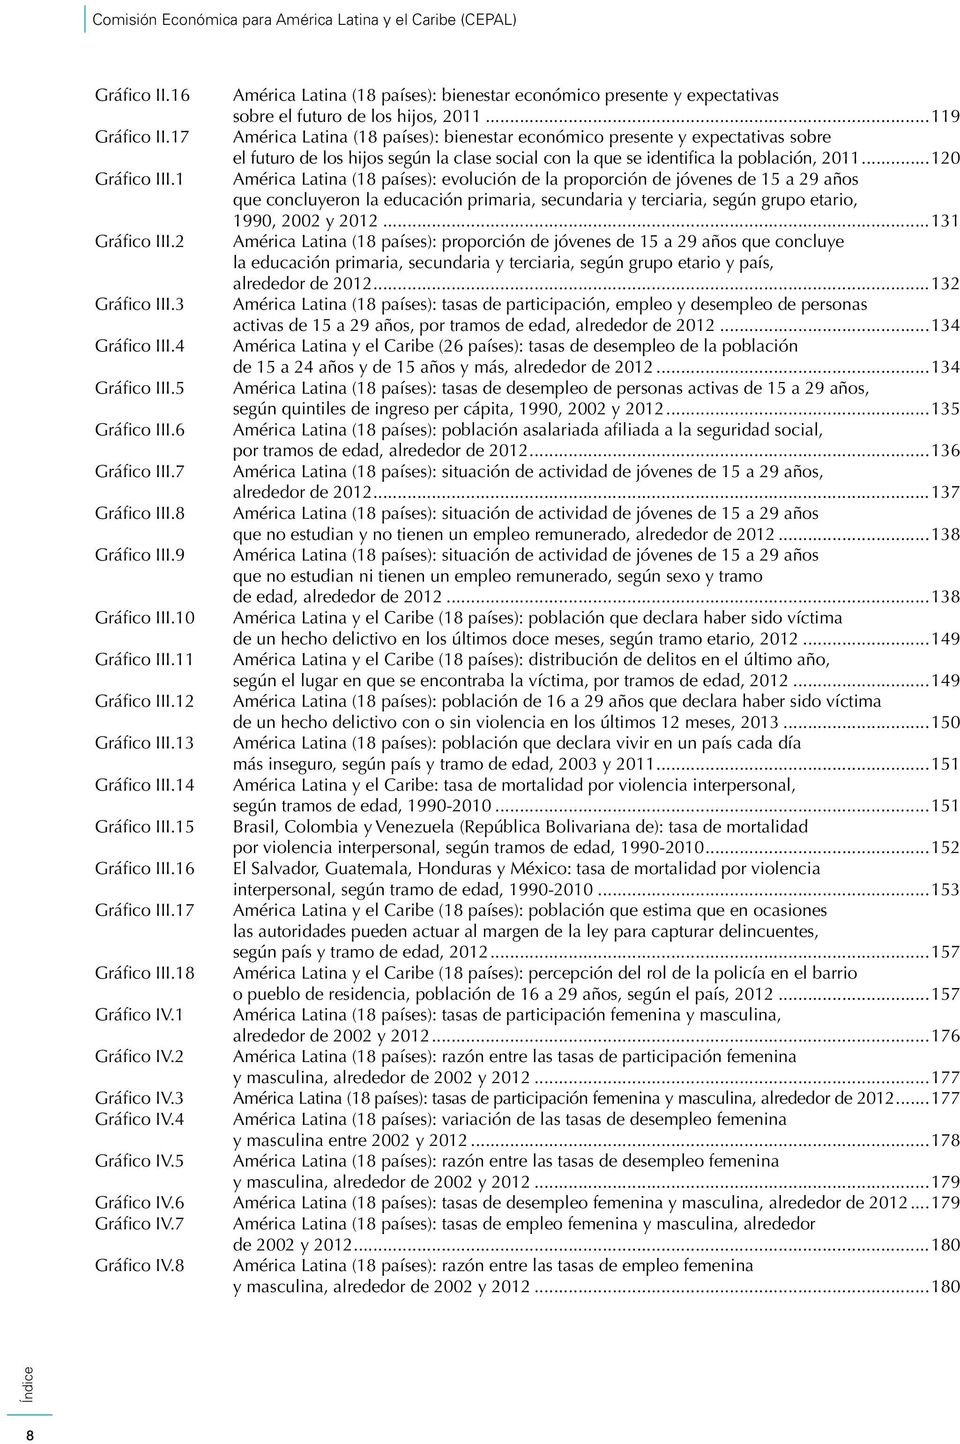 1 Améric Ltin (18 píses): evolución de l proporción de jóvenes de 15 29 ños que concluyeron l educción primri, secundri y terciri, según grupo etrio, 1990, 2002 y 2012...131 Gráfico III.